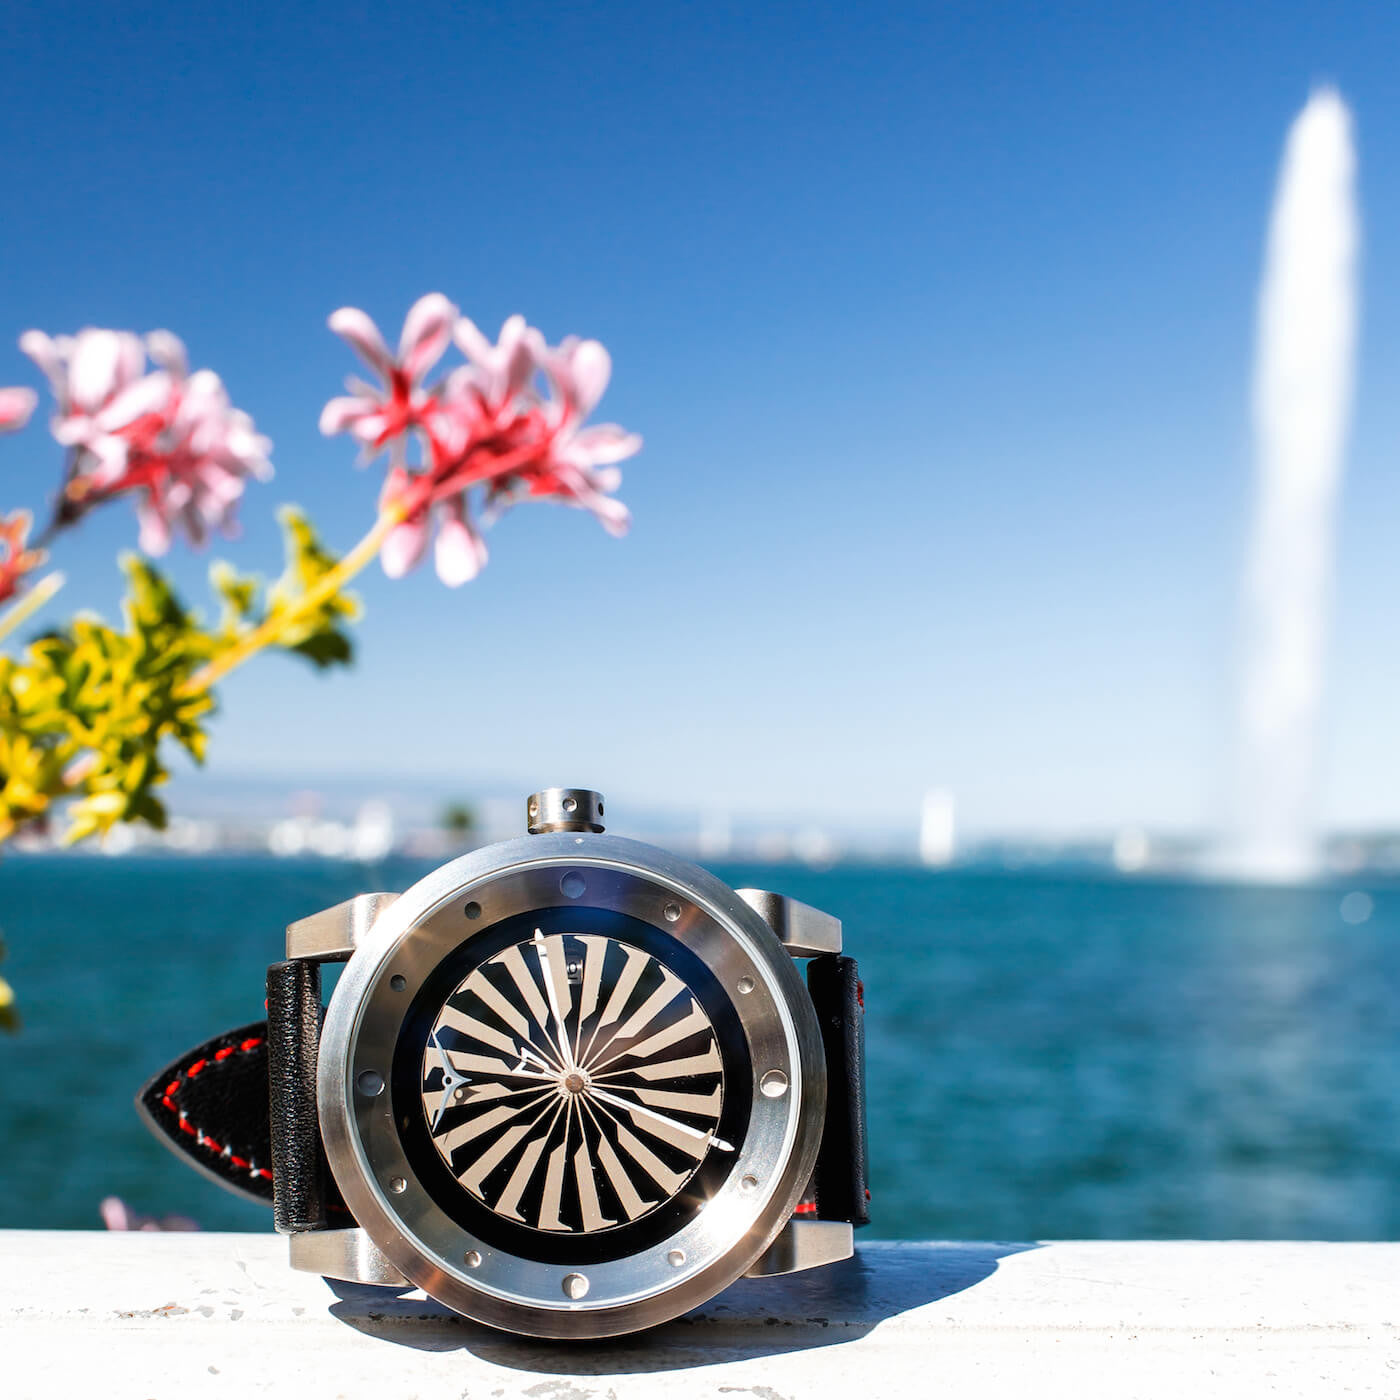 ZINVO Geneva Lake Watches